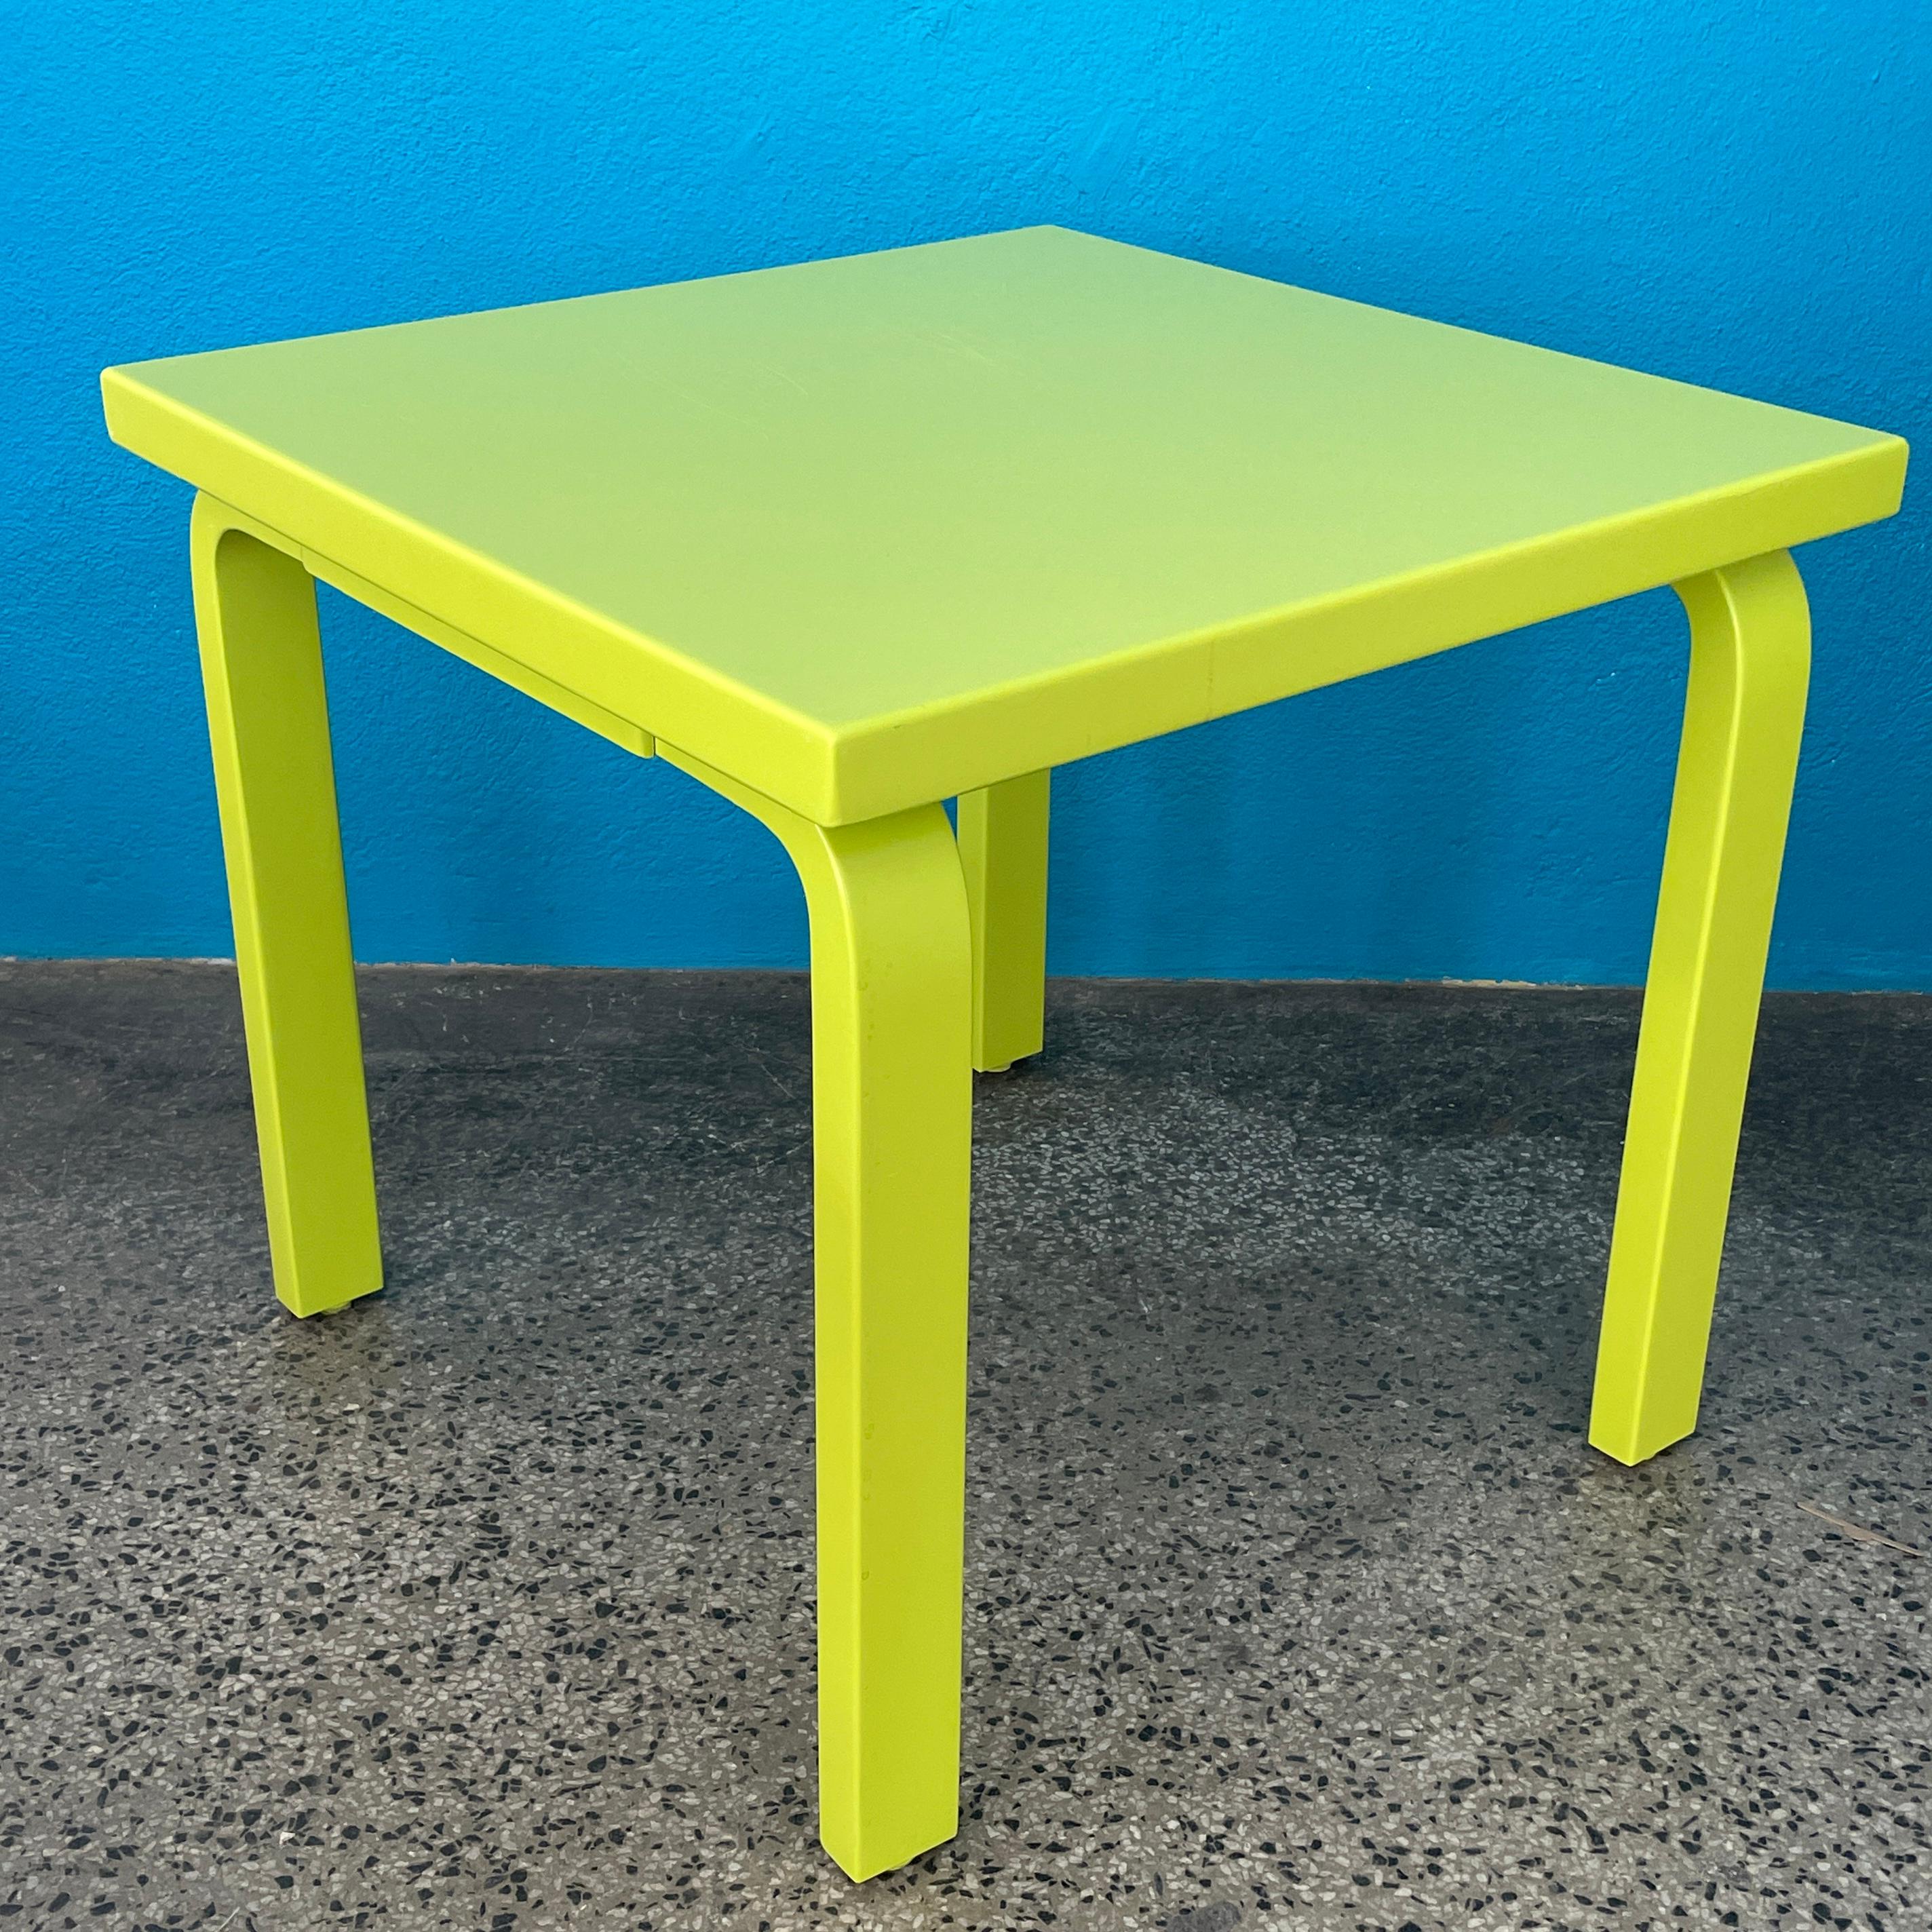 Spektakulär farbiger kleiner Tisch von Alvar Aalto für Artek Finnland. 

Ikonisches L-Bein-Design. Irgendwann von einem Fachmann neu gestrichen. Keine Originalfarbe.

Abmessungen:
Höhe 54cm
Länge und Breite 60cm

Geeignet für viele Verwendungen wie